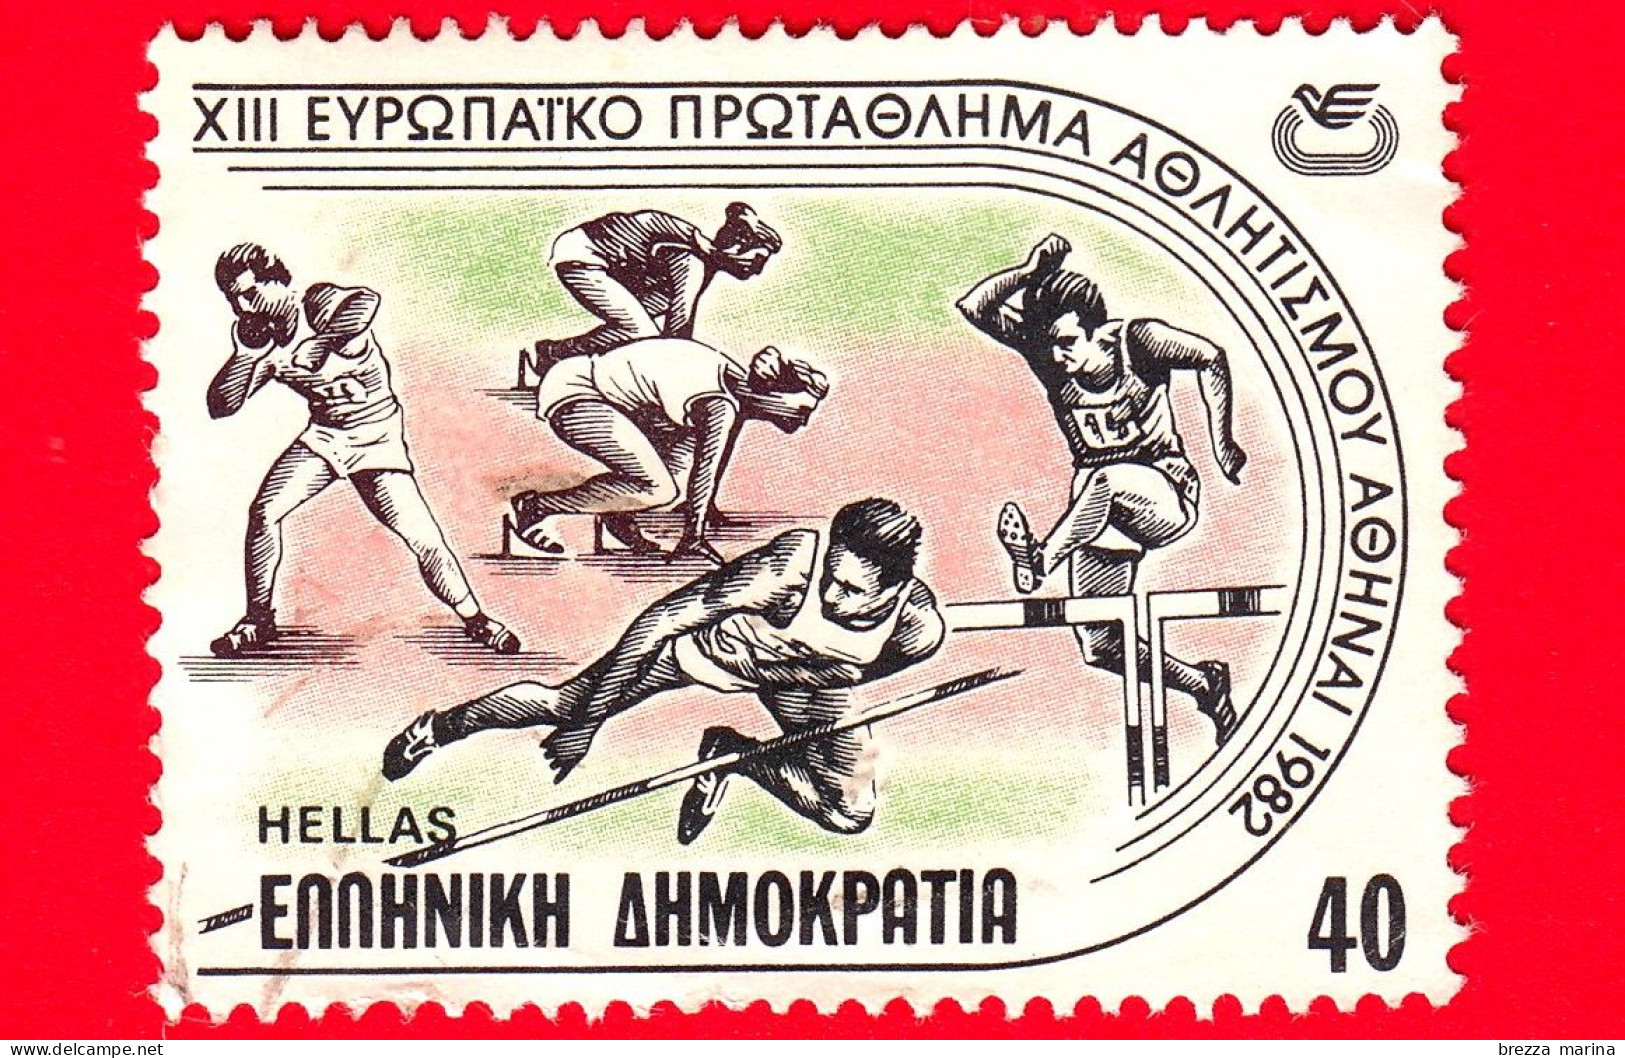 GRECIA - HELLAS - Usato - 1982 - Campionato Europeo Di Atletica - Corsa - Getto Del Peso - Salto In Alto - 40 - Used Stamps